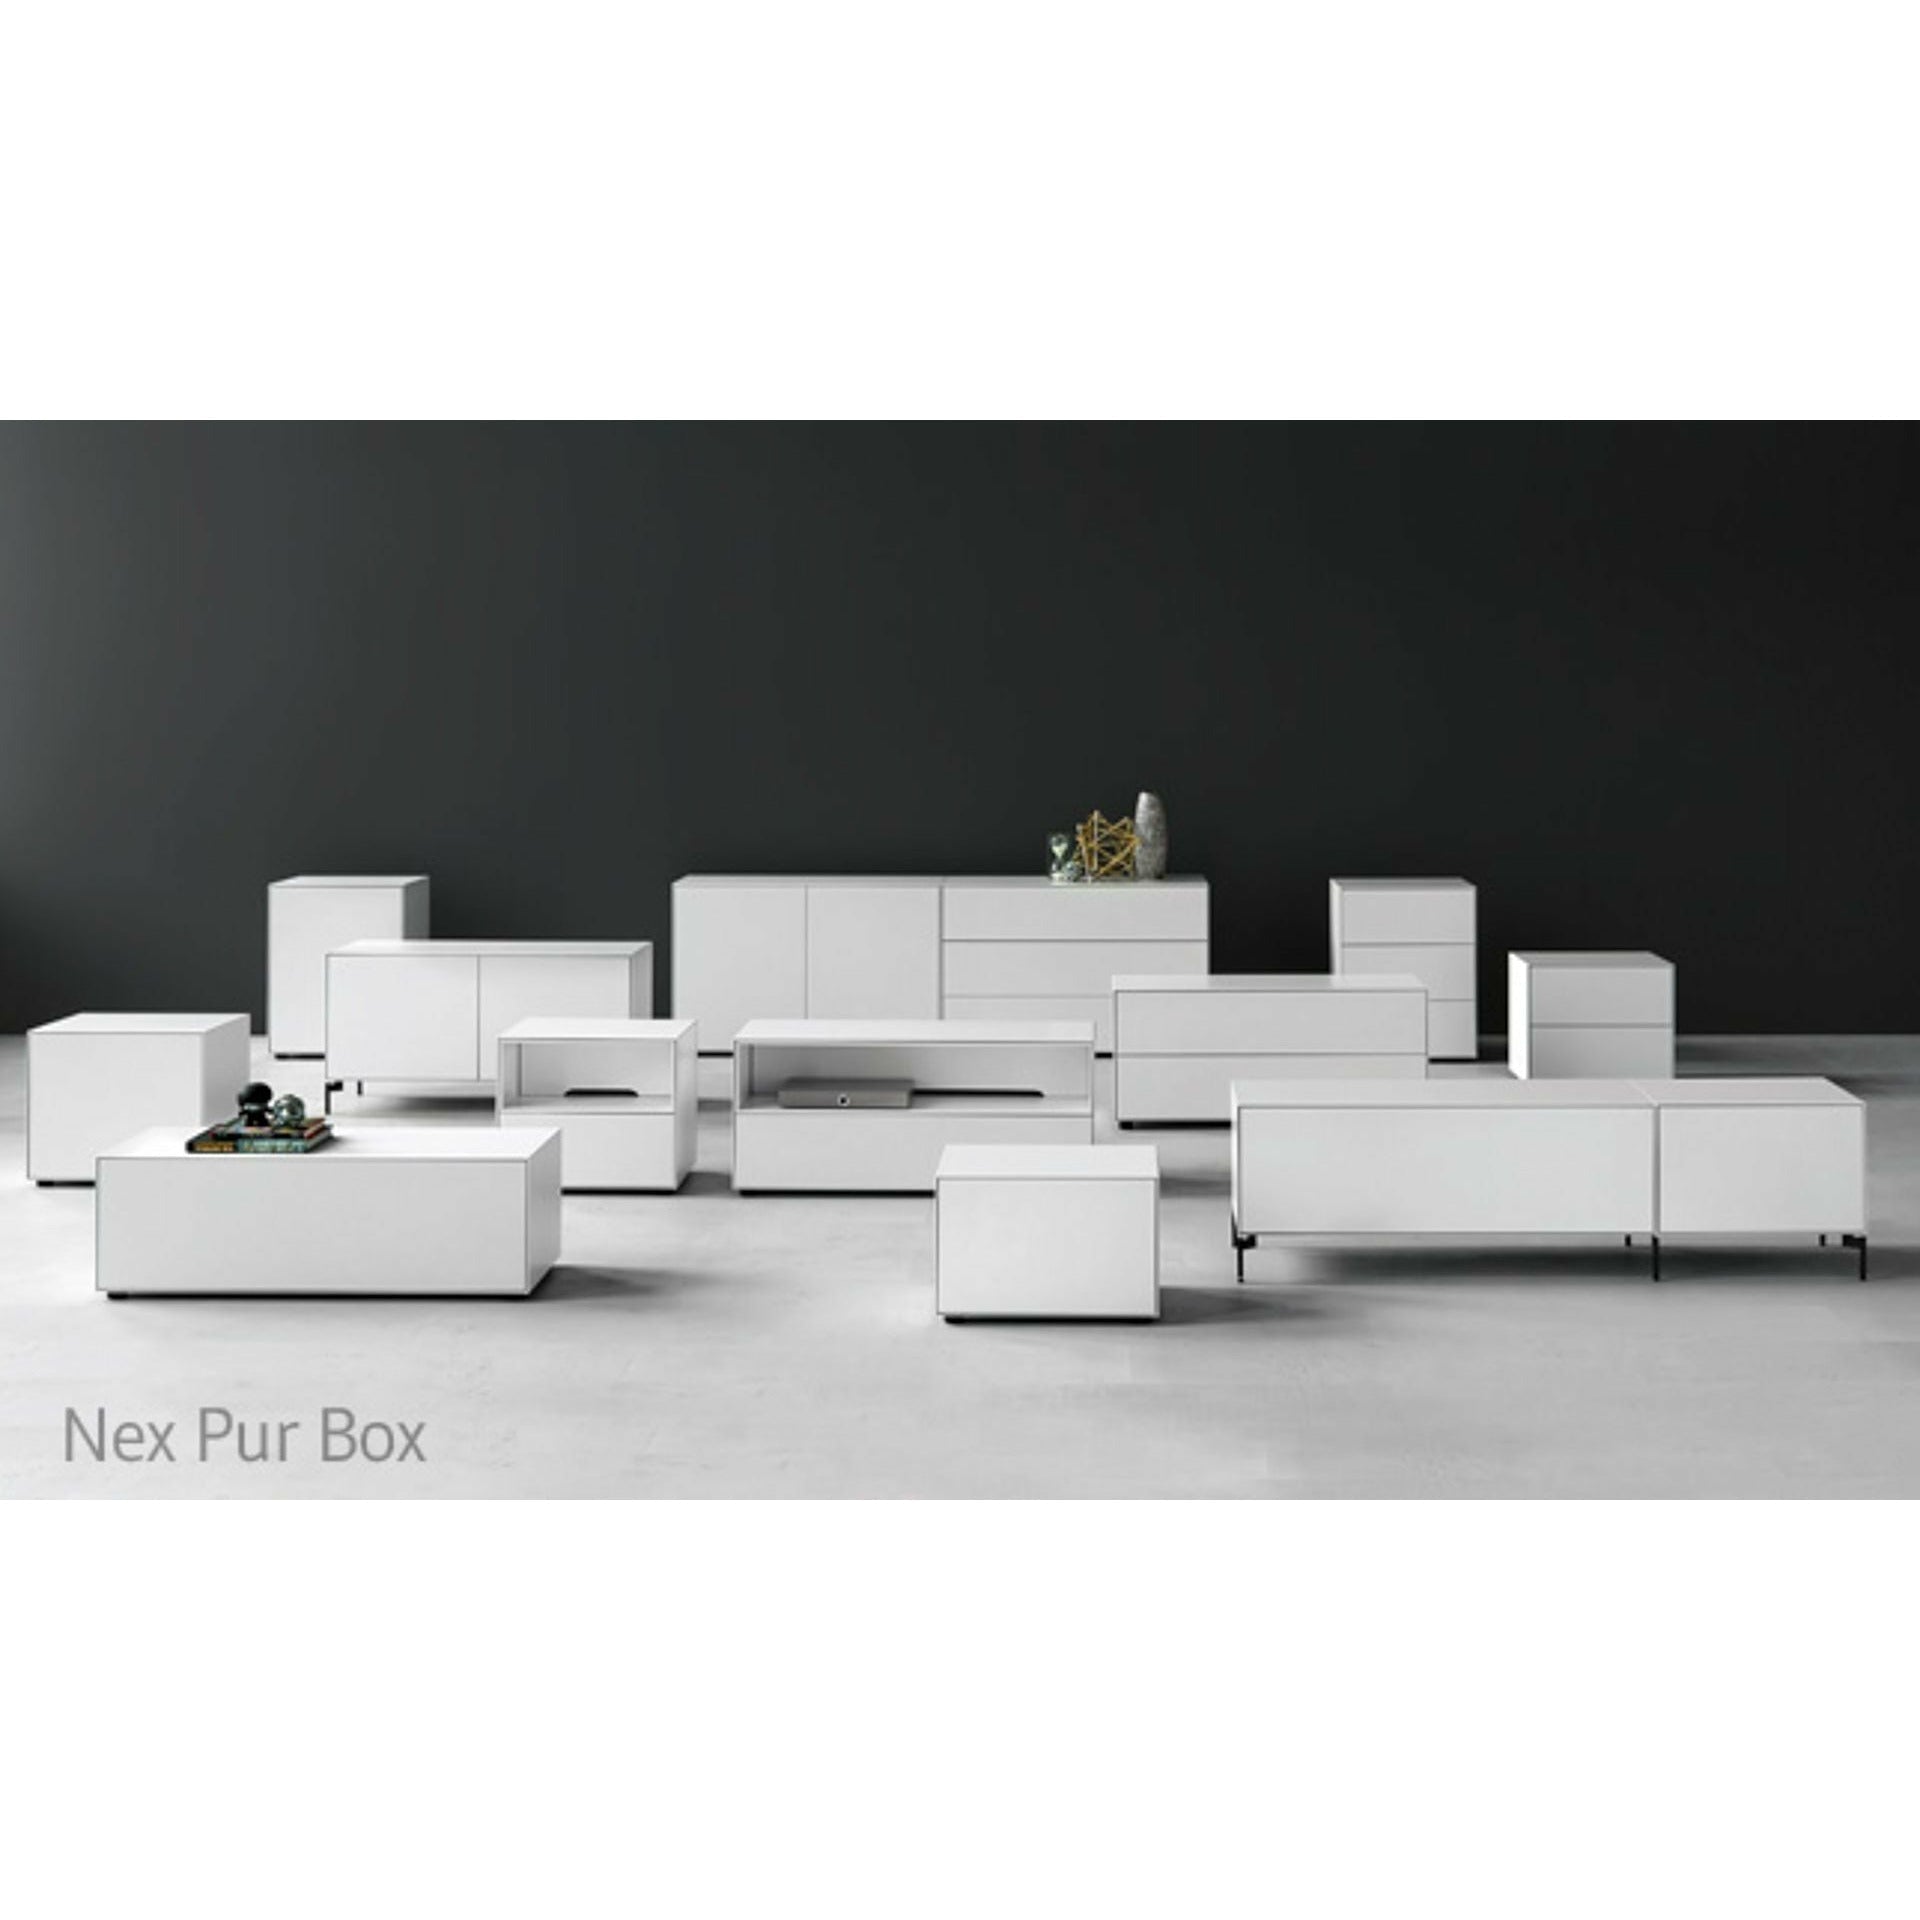 Piure Nex pur box deur hx w 75x180 cm, 1 plank